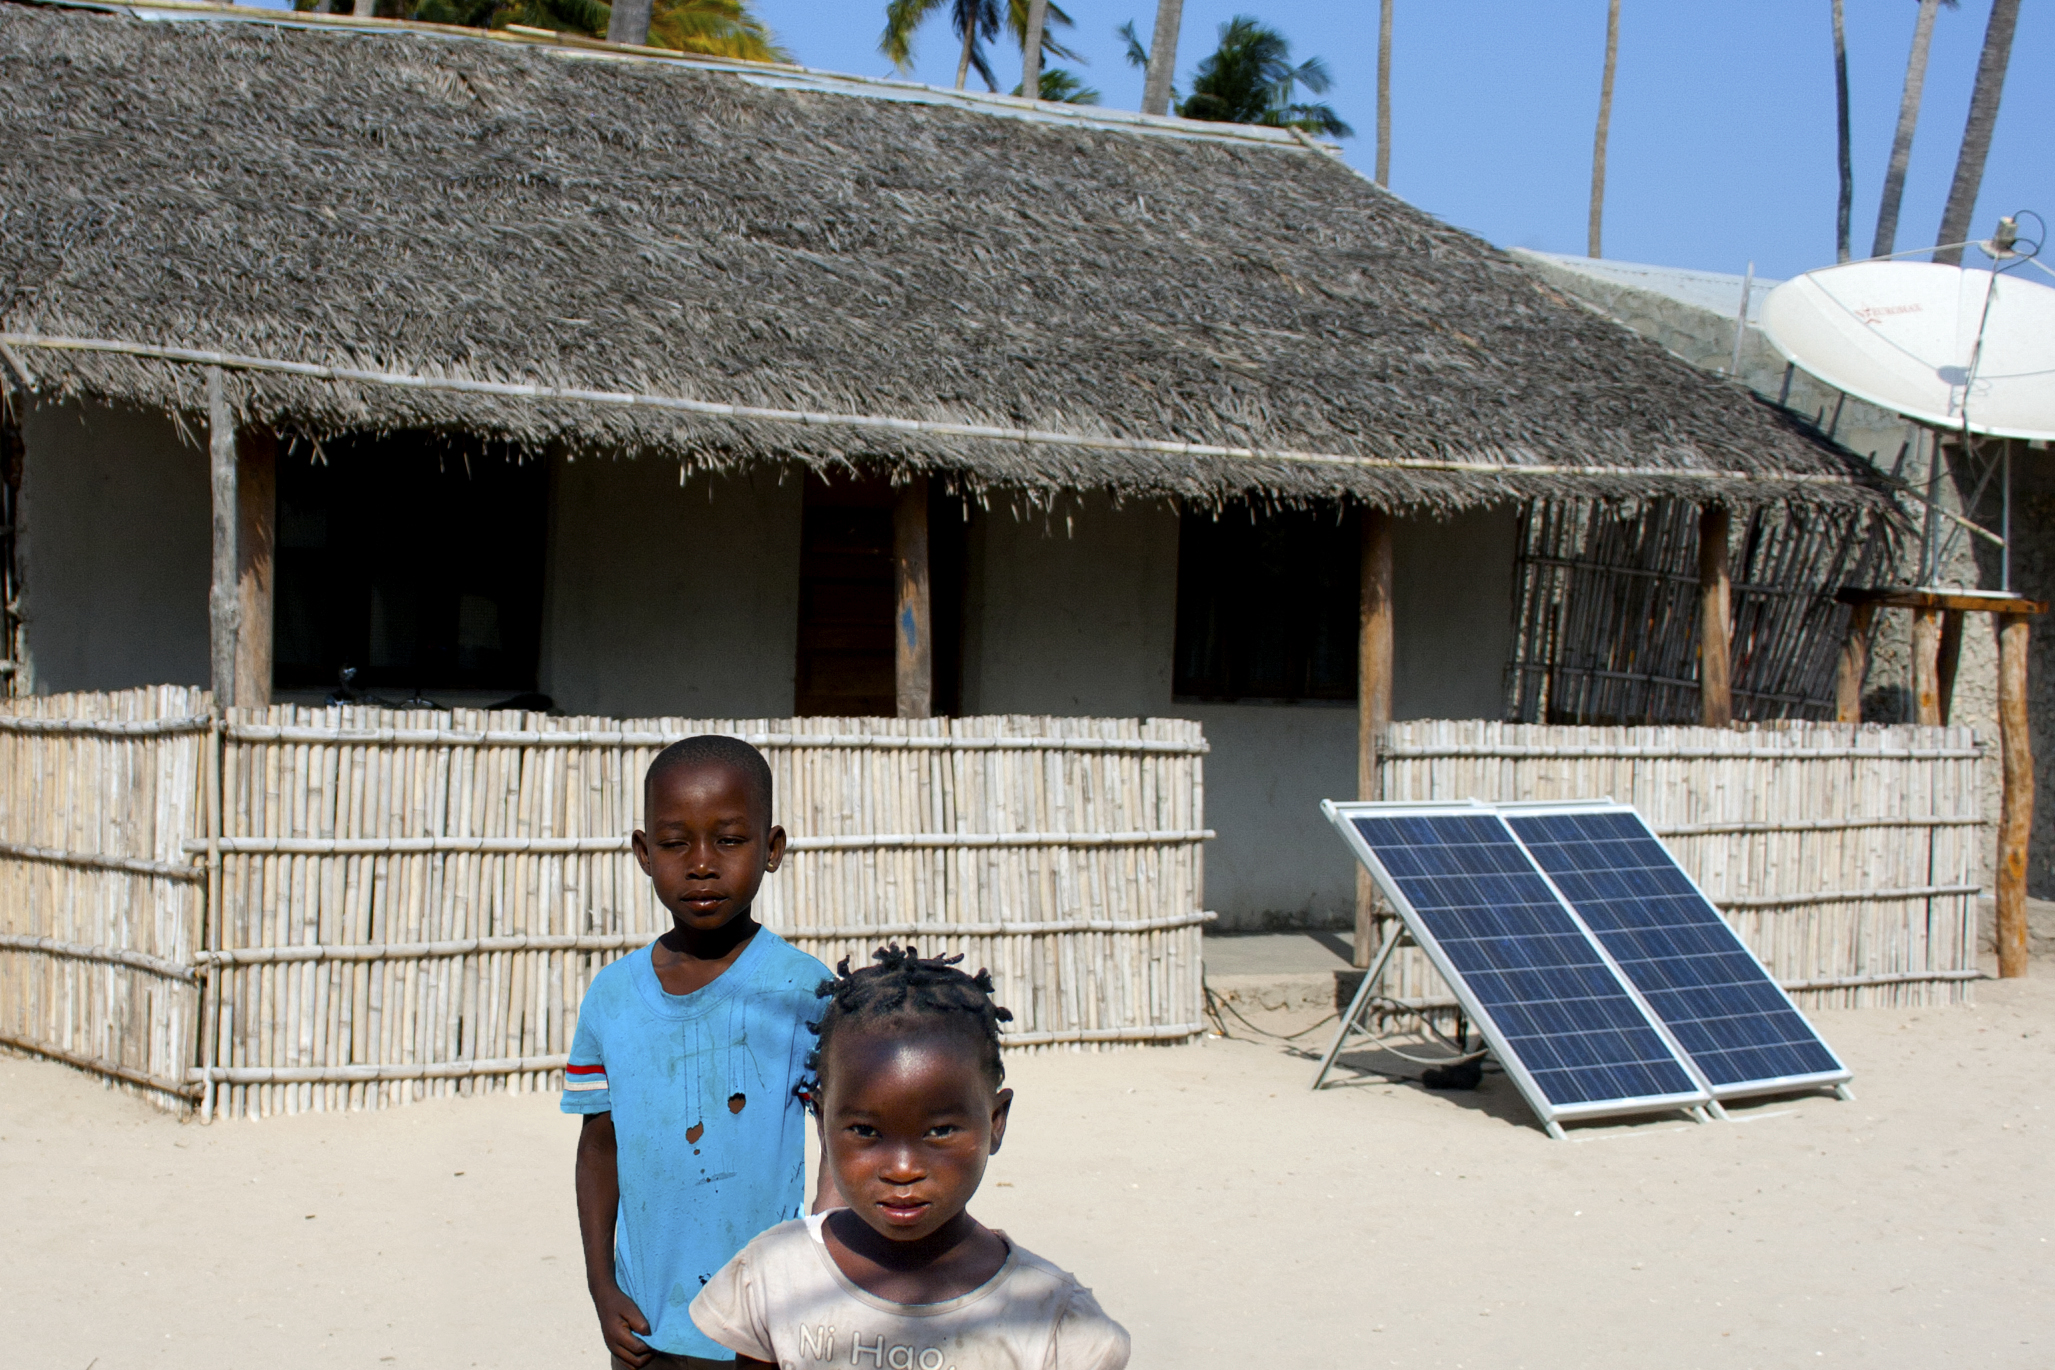 Mozambique’s Climate Change Programme, DFID